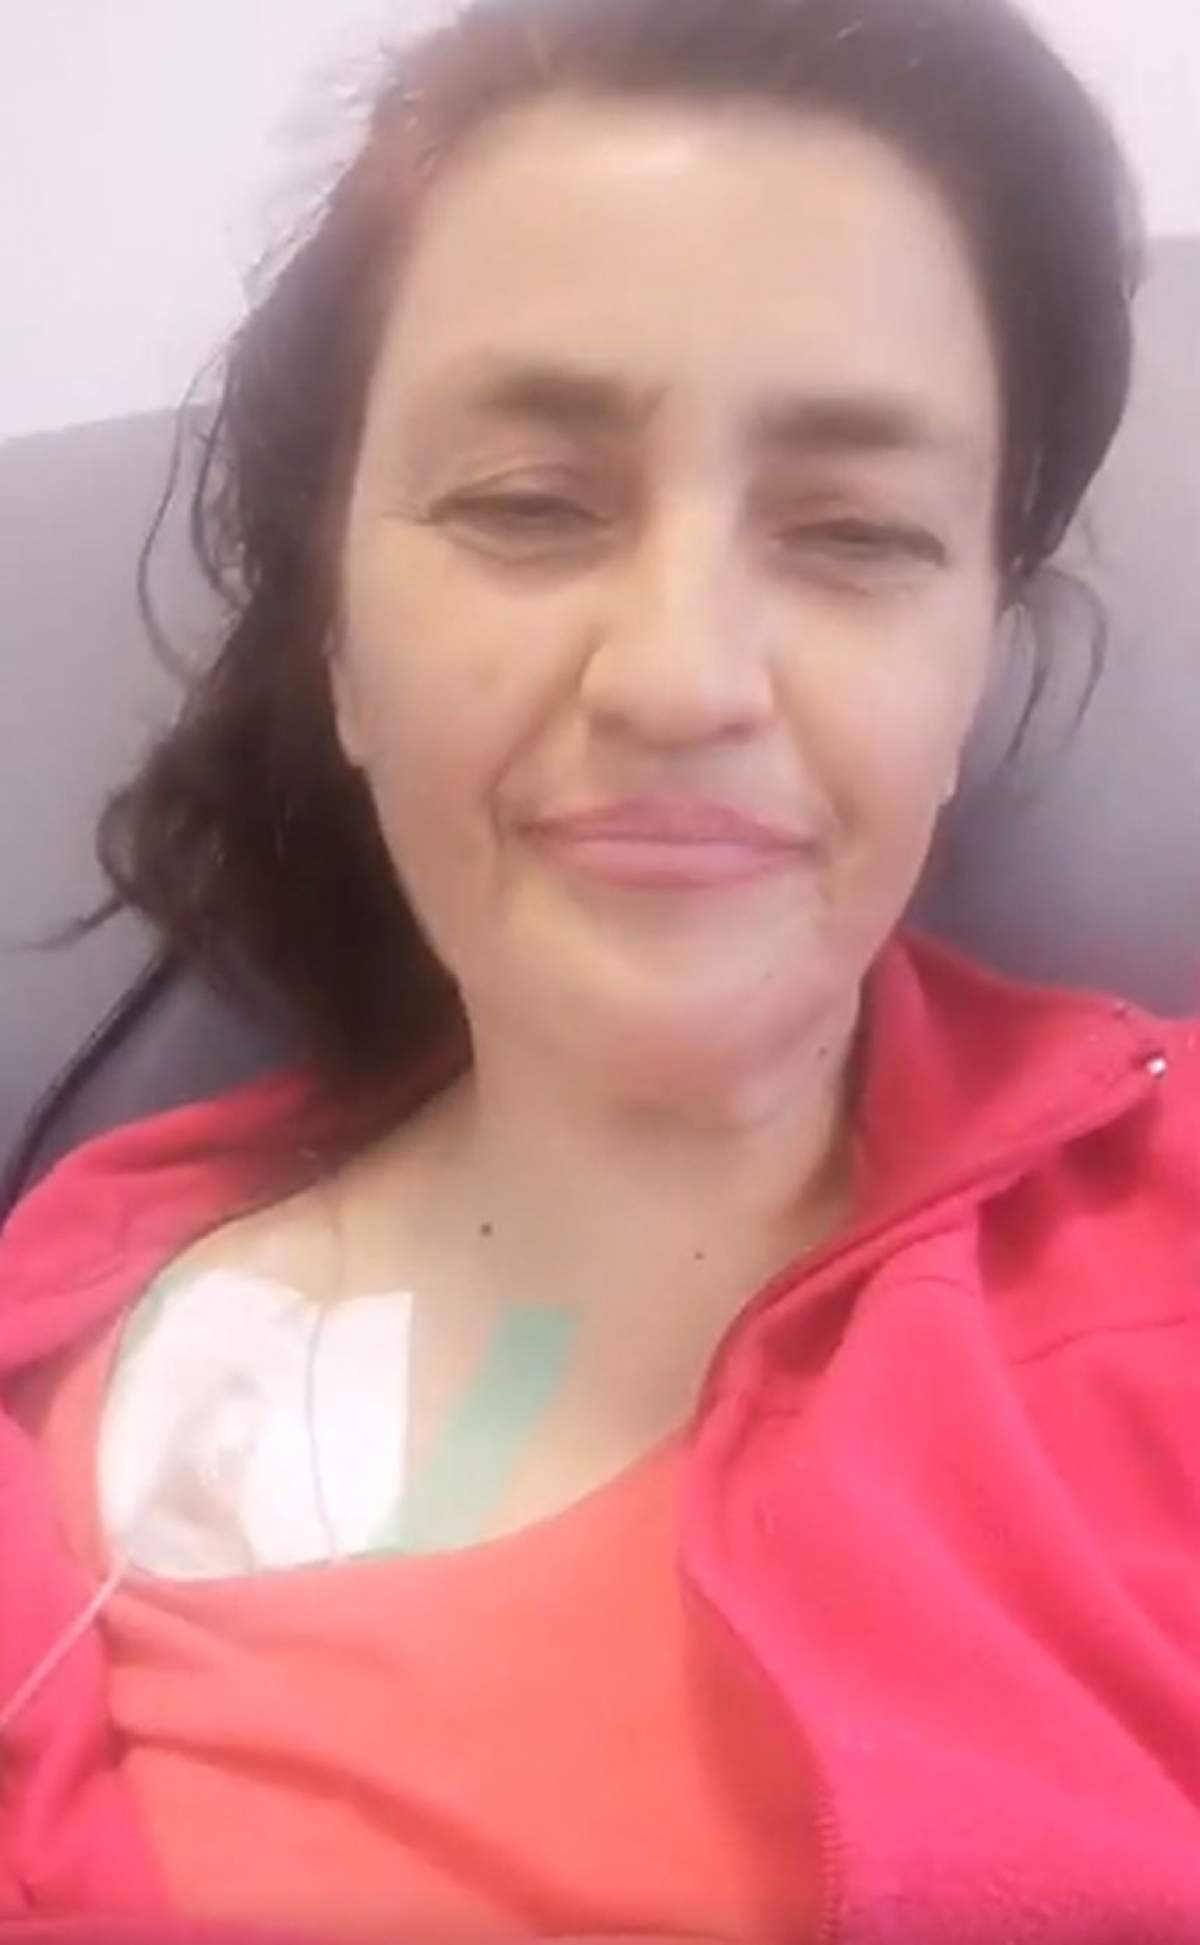 Rona Hartner a început cura de chimioterapie. "Sunt cam obosită după prima şedinţă"